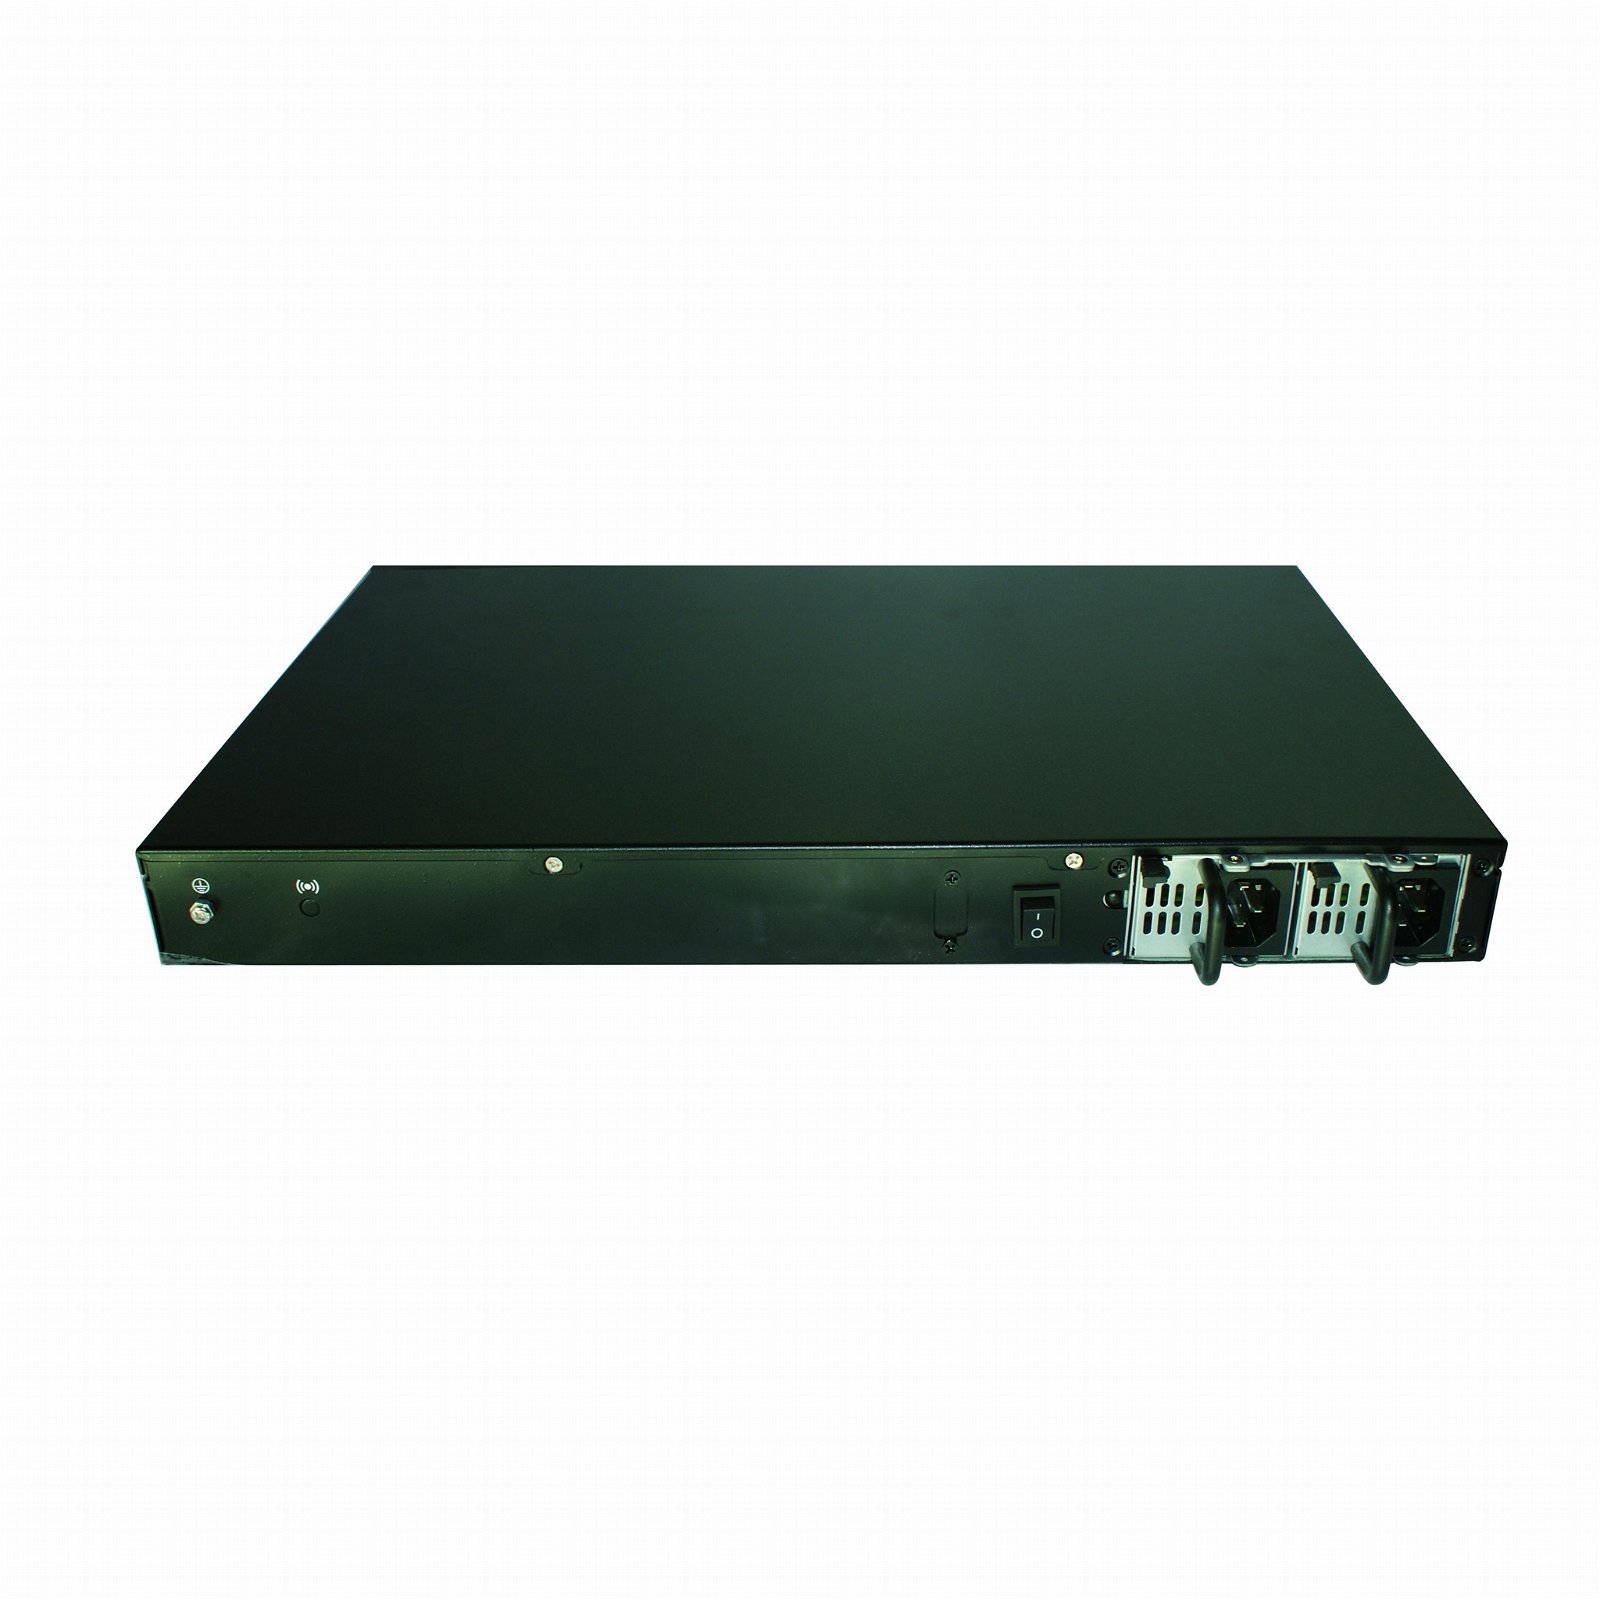 無風扇網絡應用硬件平台帶主板電源機箱 3